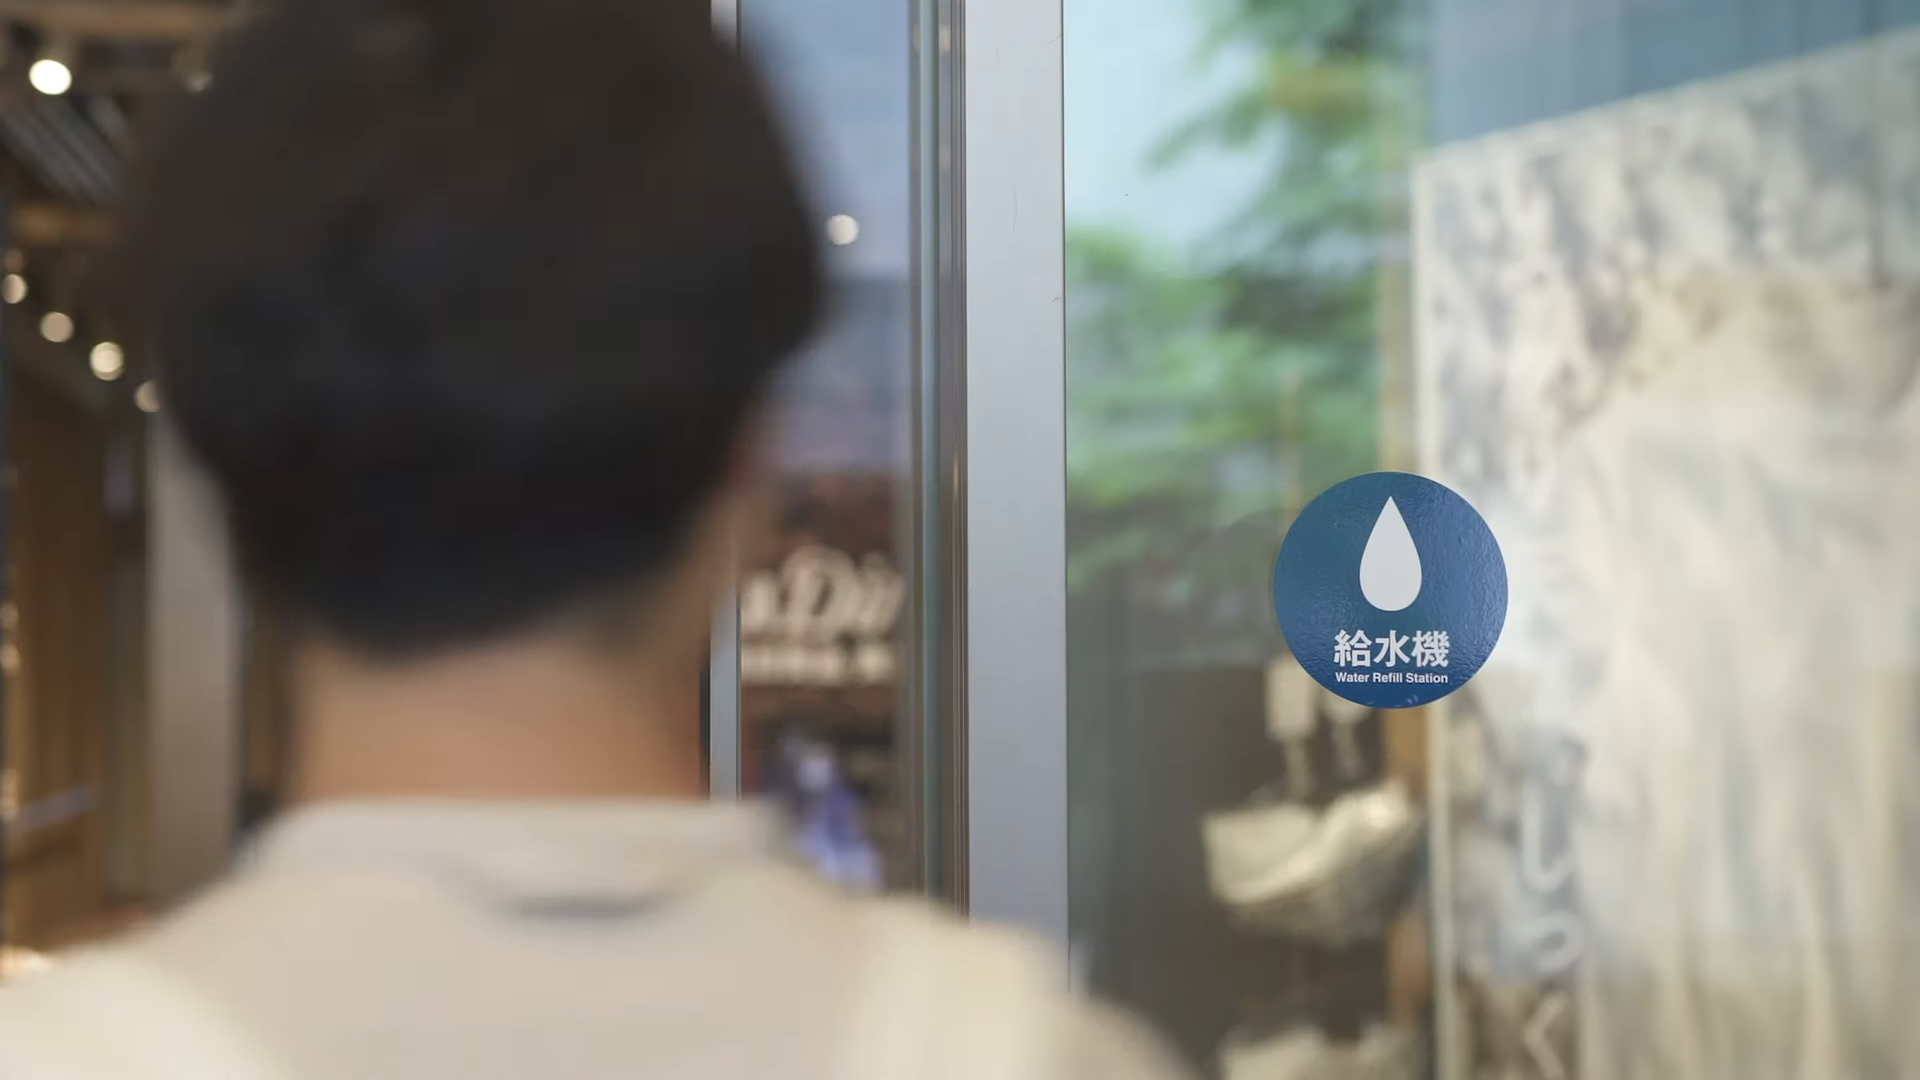 Ein Geschäft mit einer "Water Refill Station": Muji geht neue Wege.